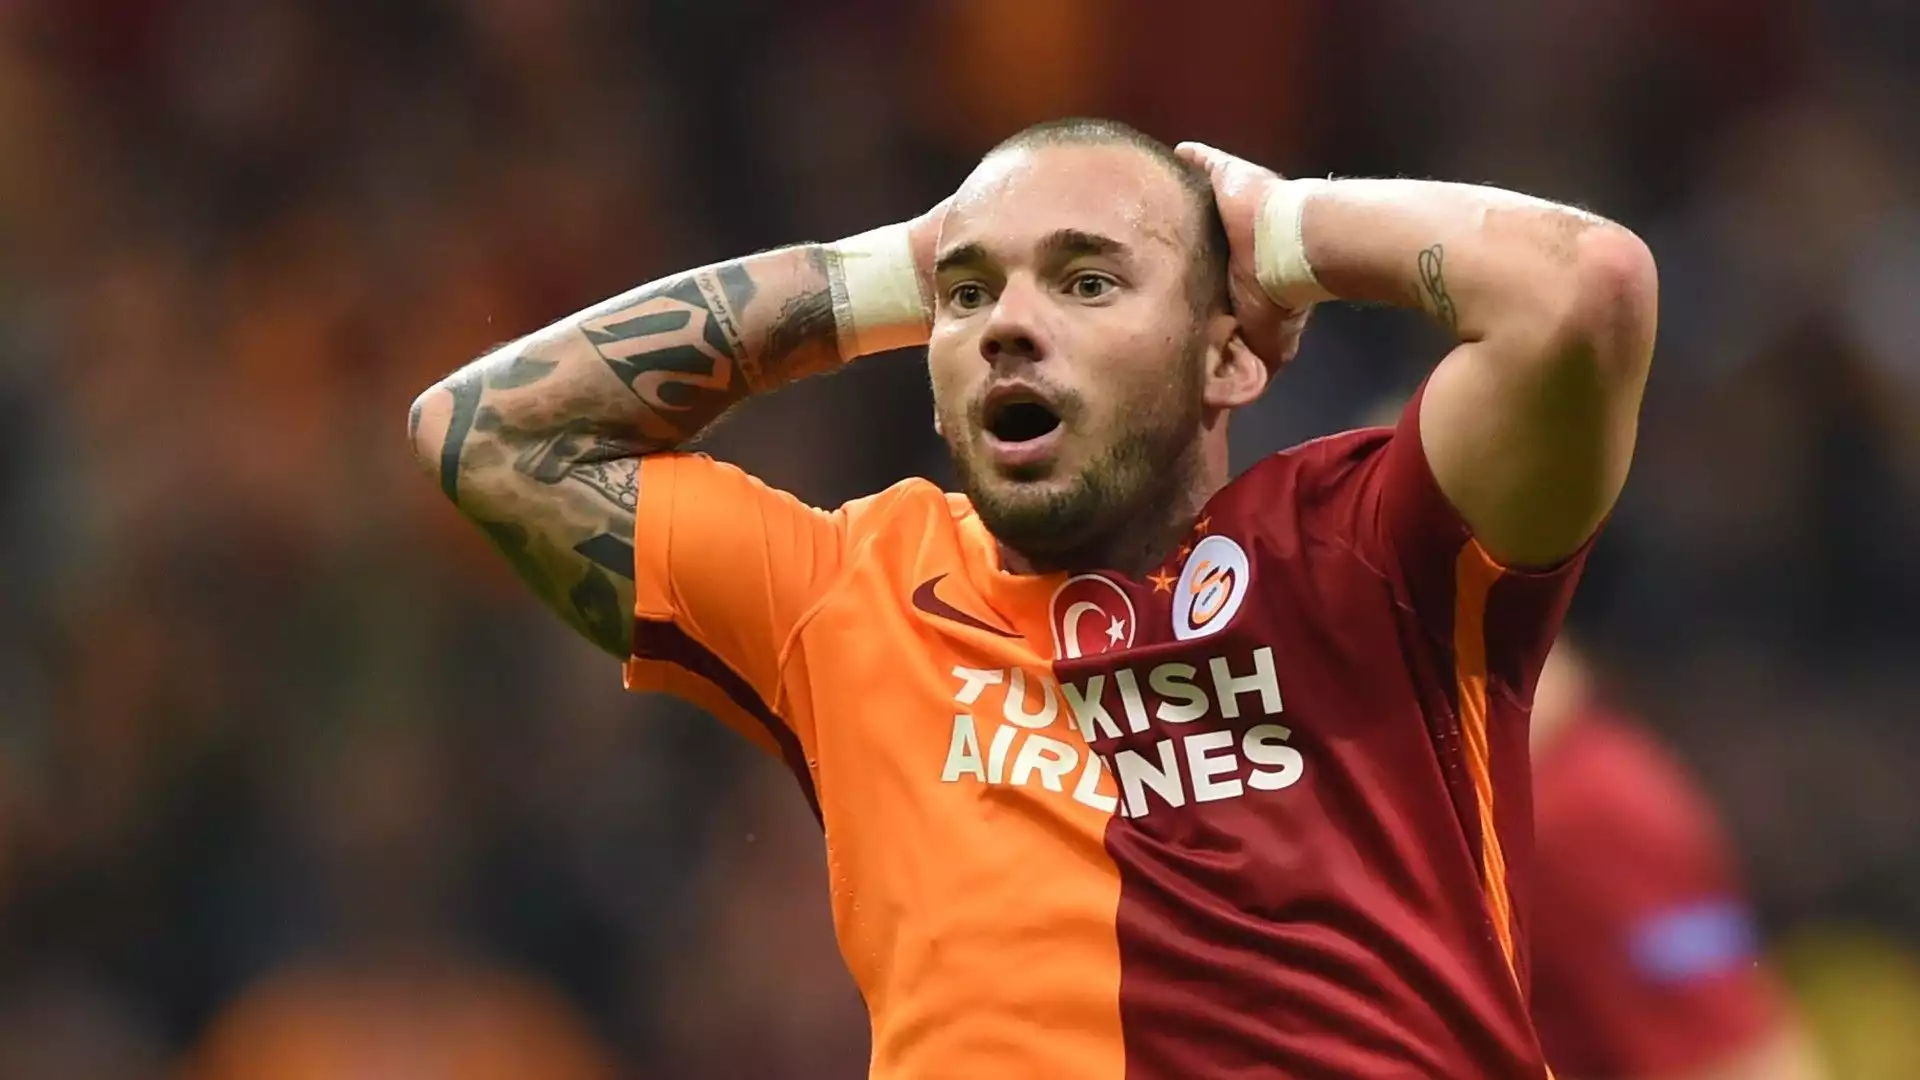 Dopo il Triplete all'Inter Wesley Sneijder si è trasferito al Galatasaray. Ci è rimasto dal 2013 al 2017, mettendo la firma su 35 reti